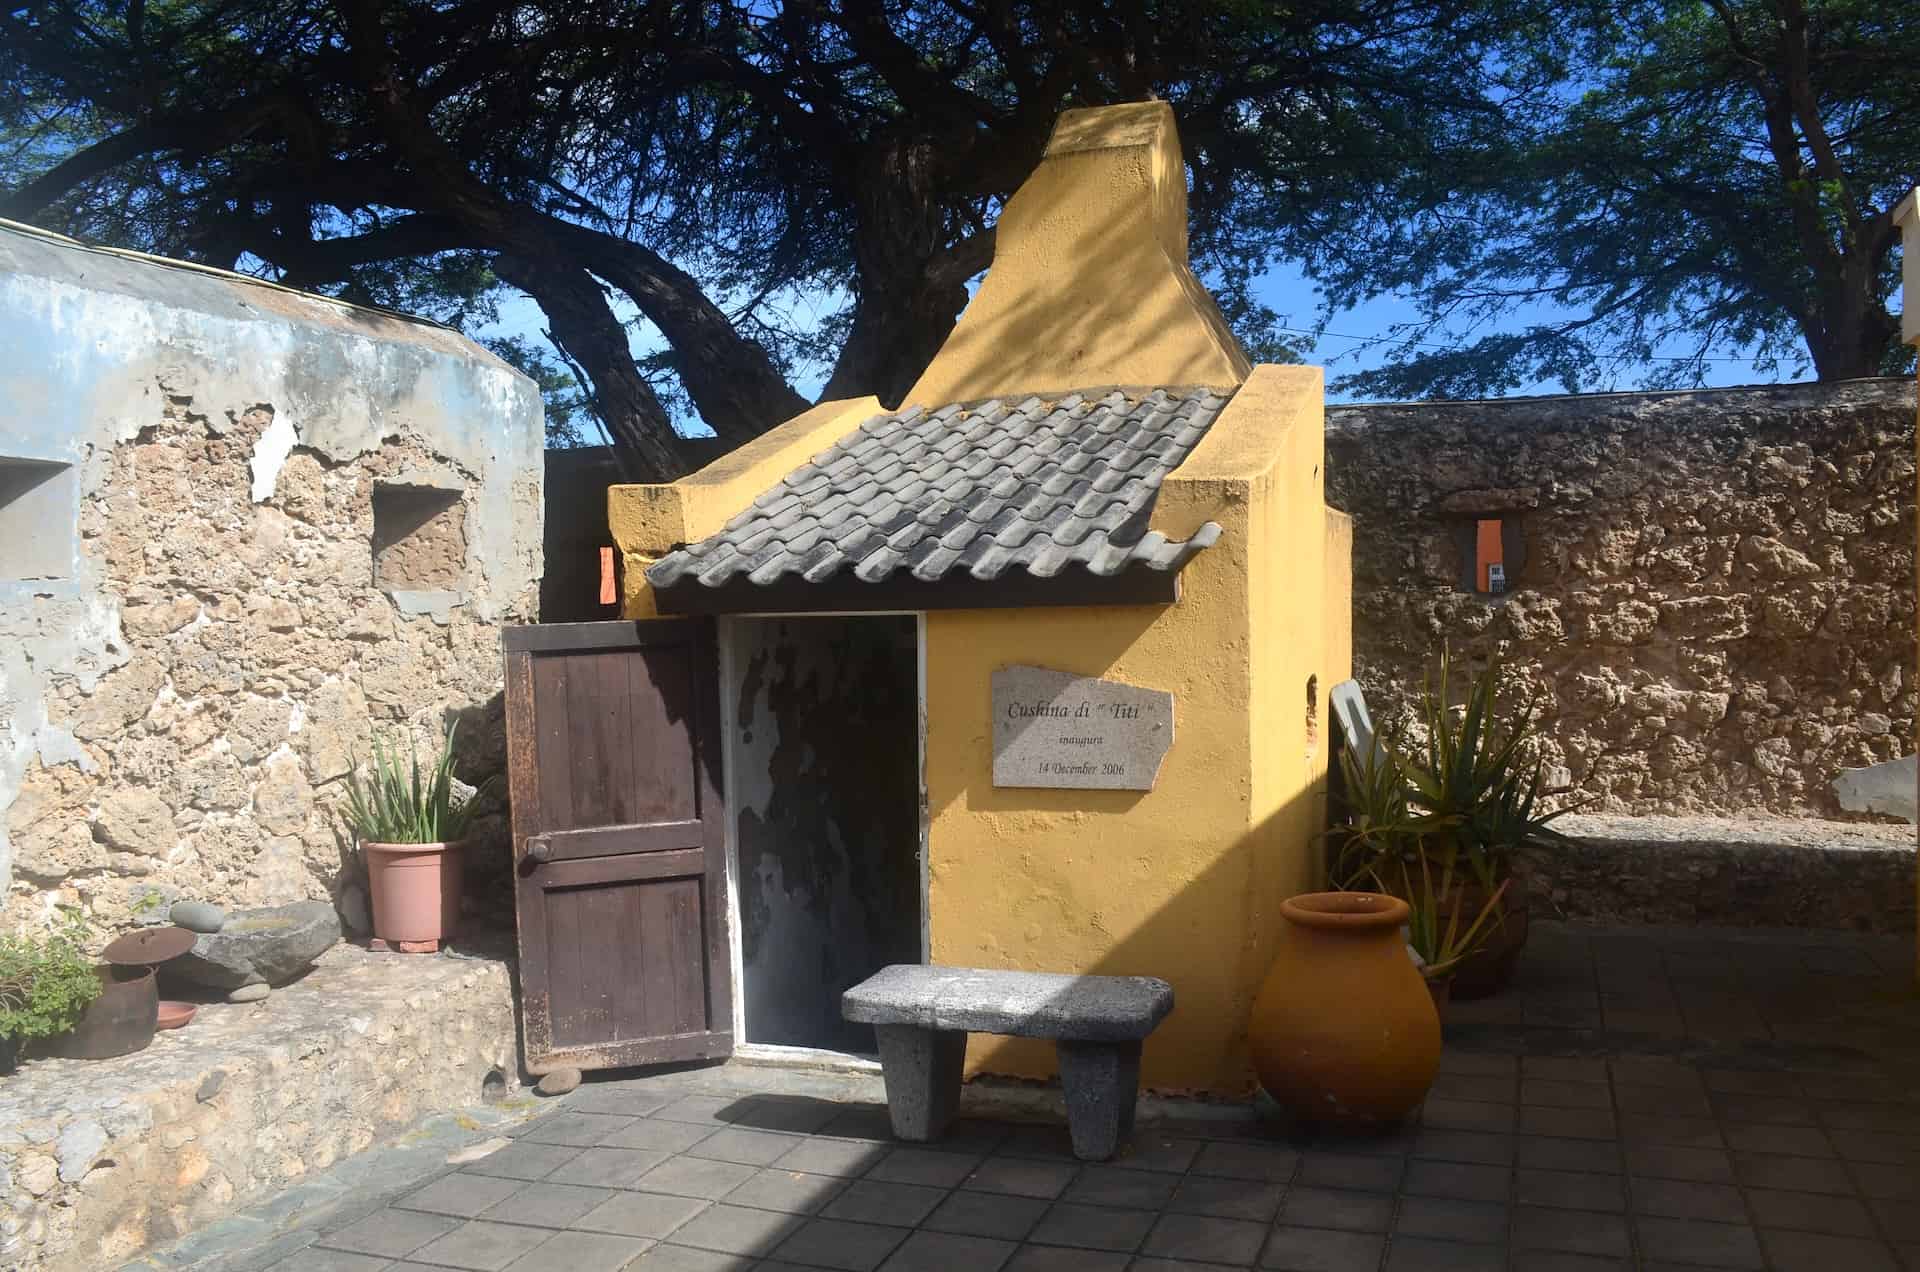 Kitchen at Fort Zoutman in Oranjestad, Aruba